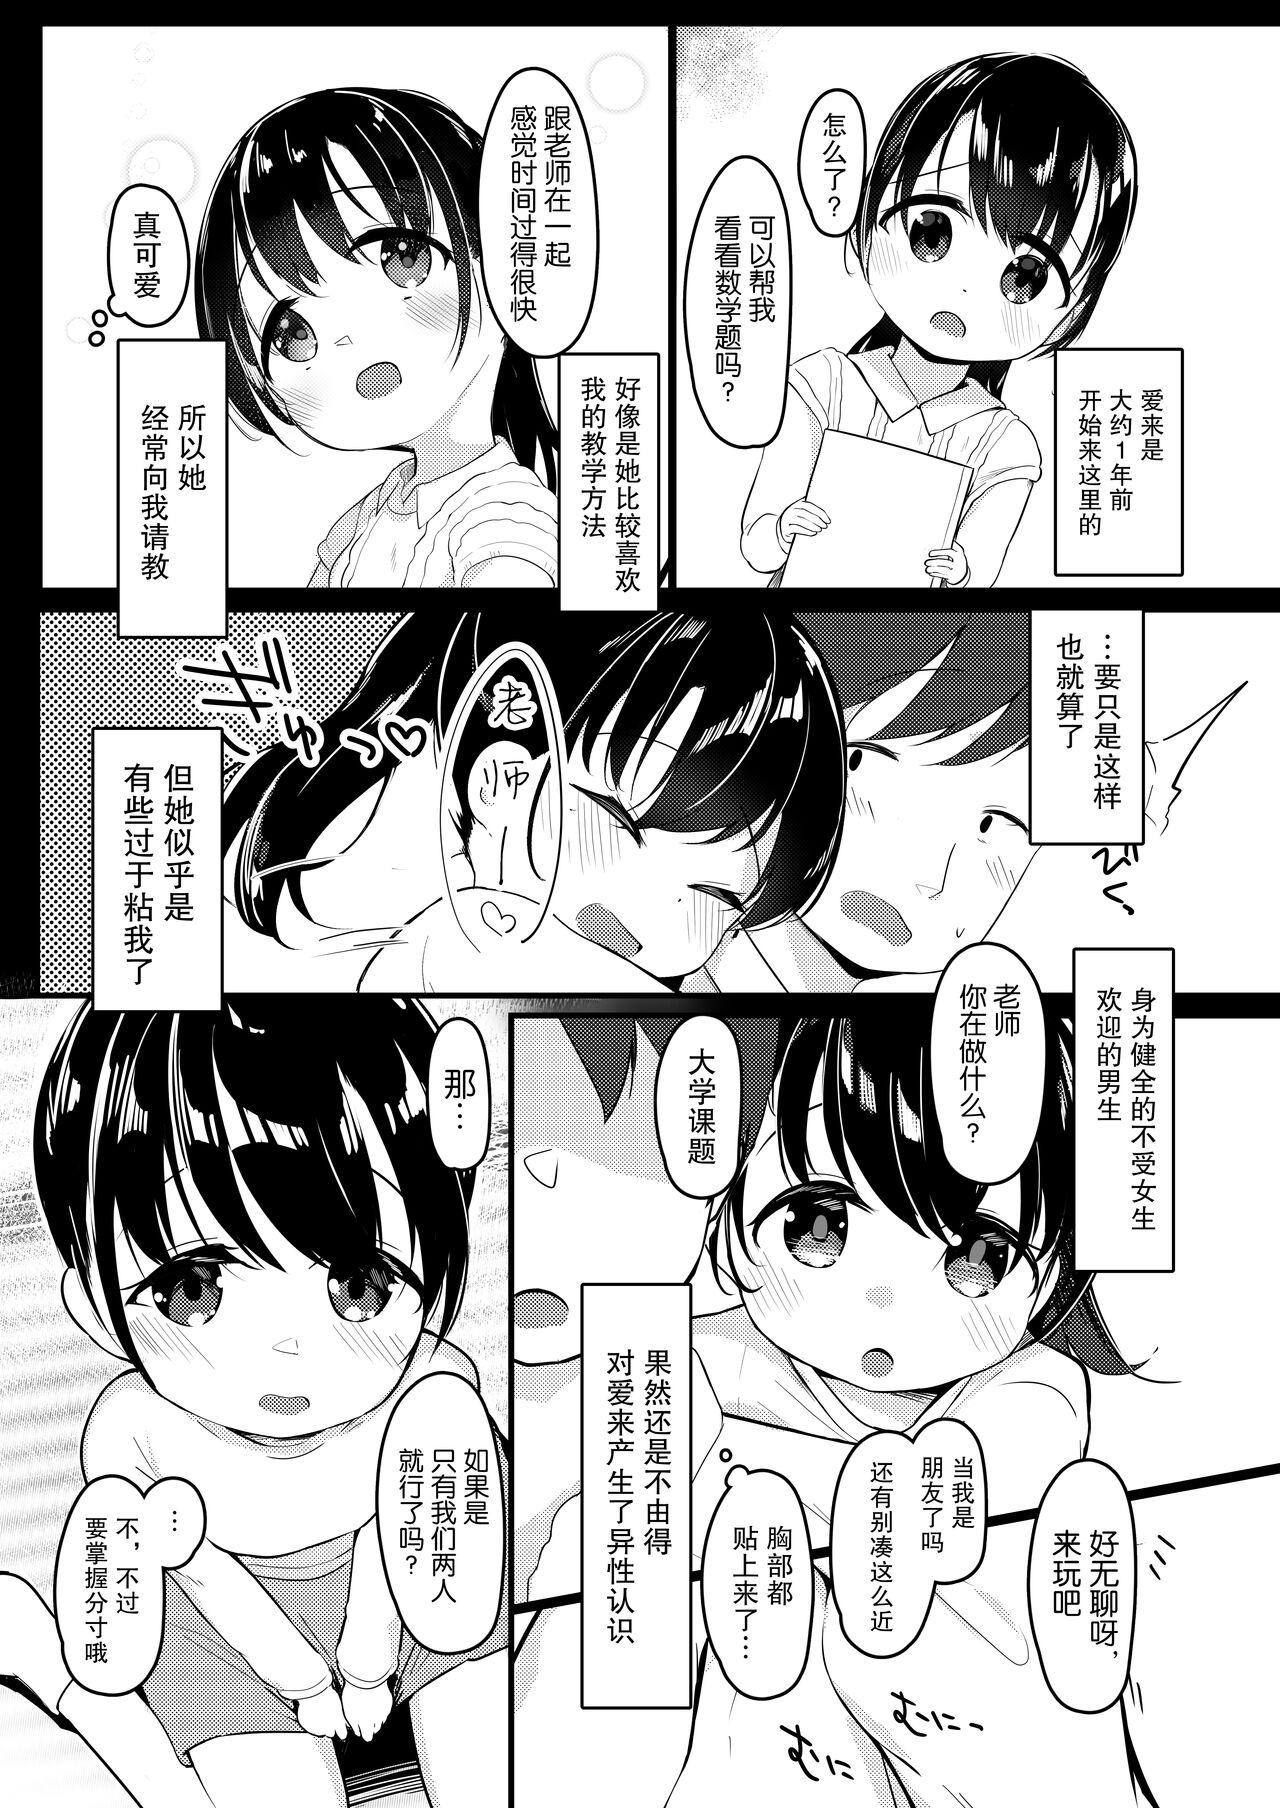 Wank Watashi ga Kanojo ja Dame desu ka? 2 - Original Athletic - Page 5